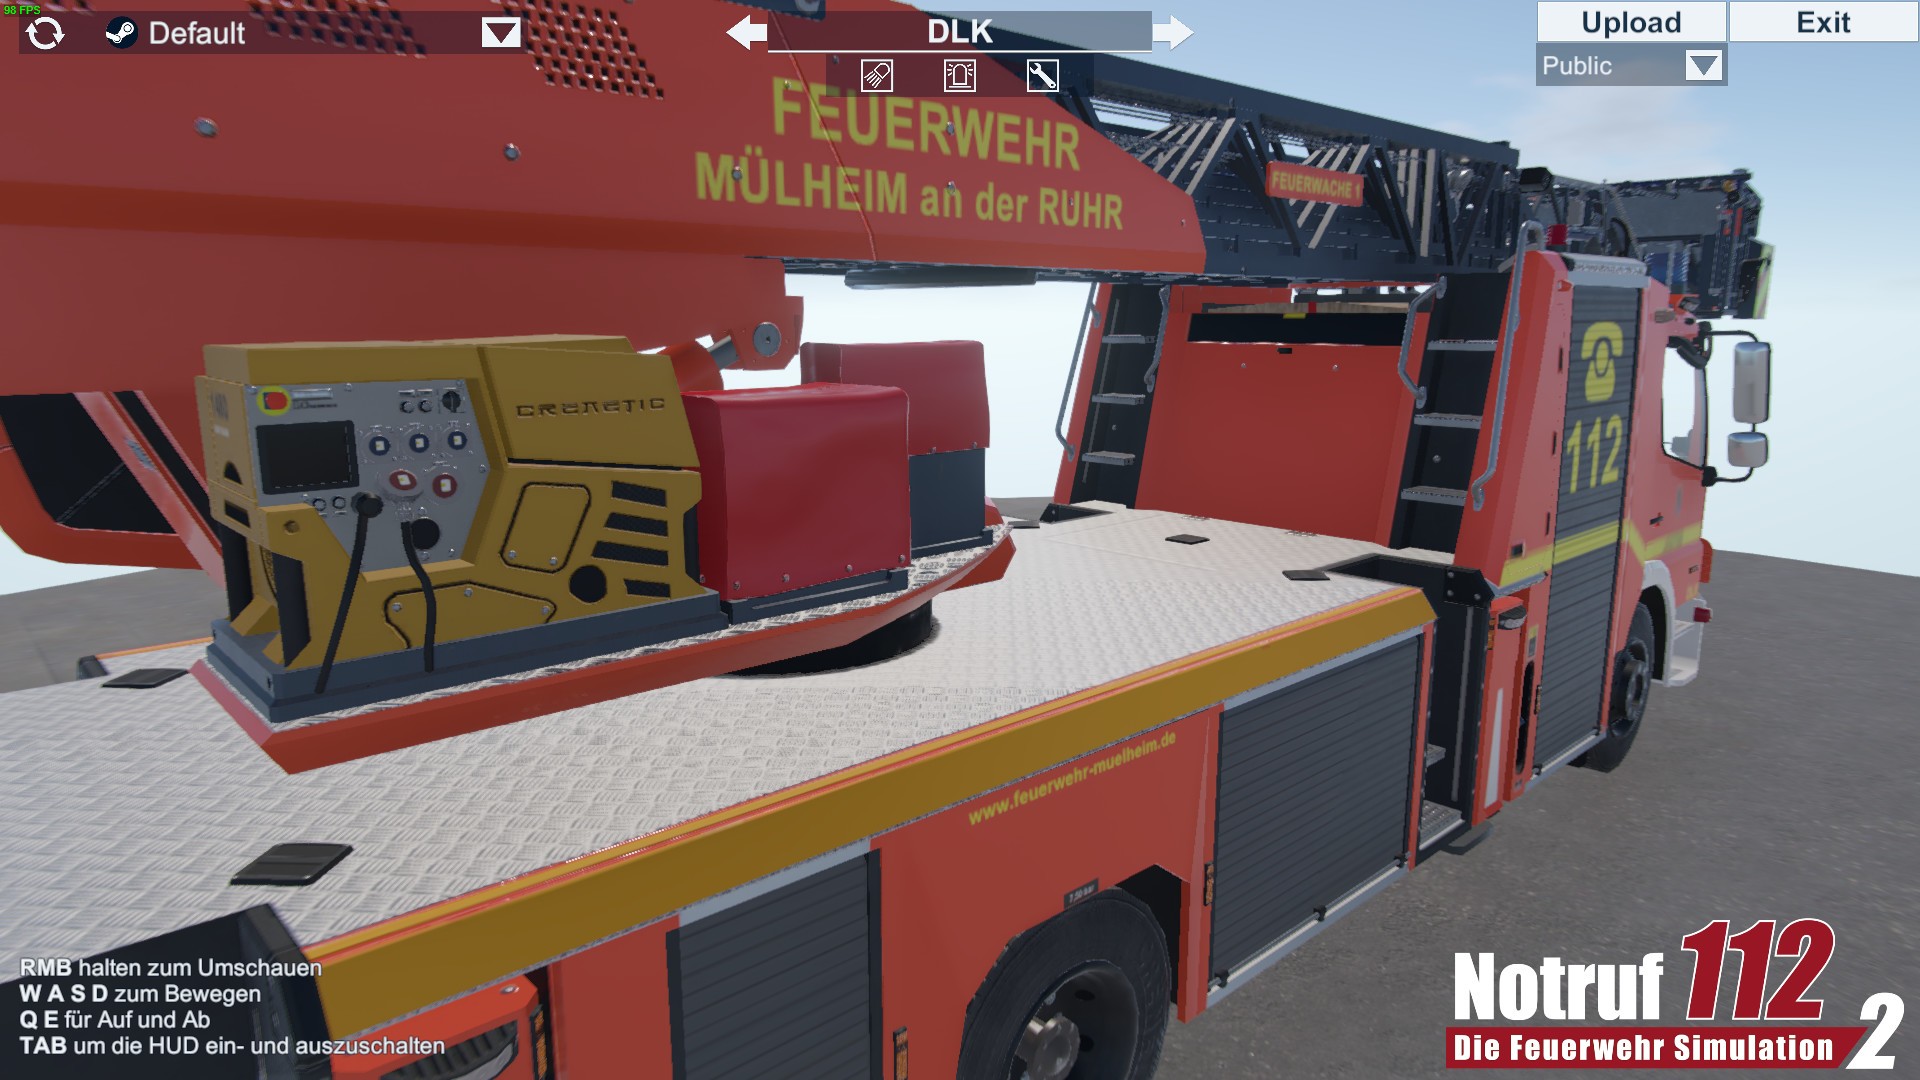 Notruf 112 - screenshots, Showroom on Feuerwehr 2: release date, videos, RAWG - Simulation reviews Die